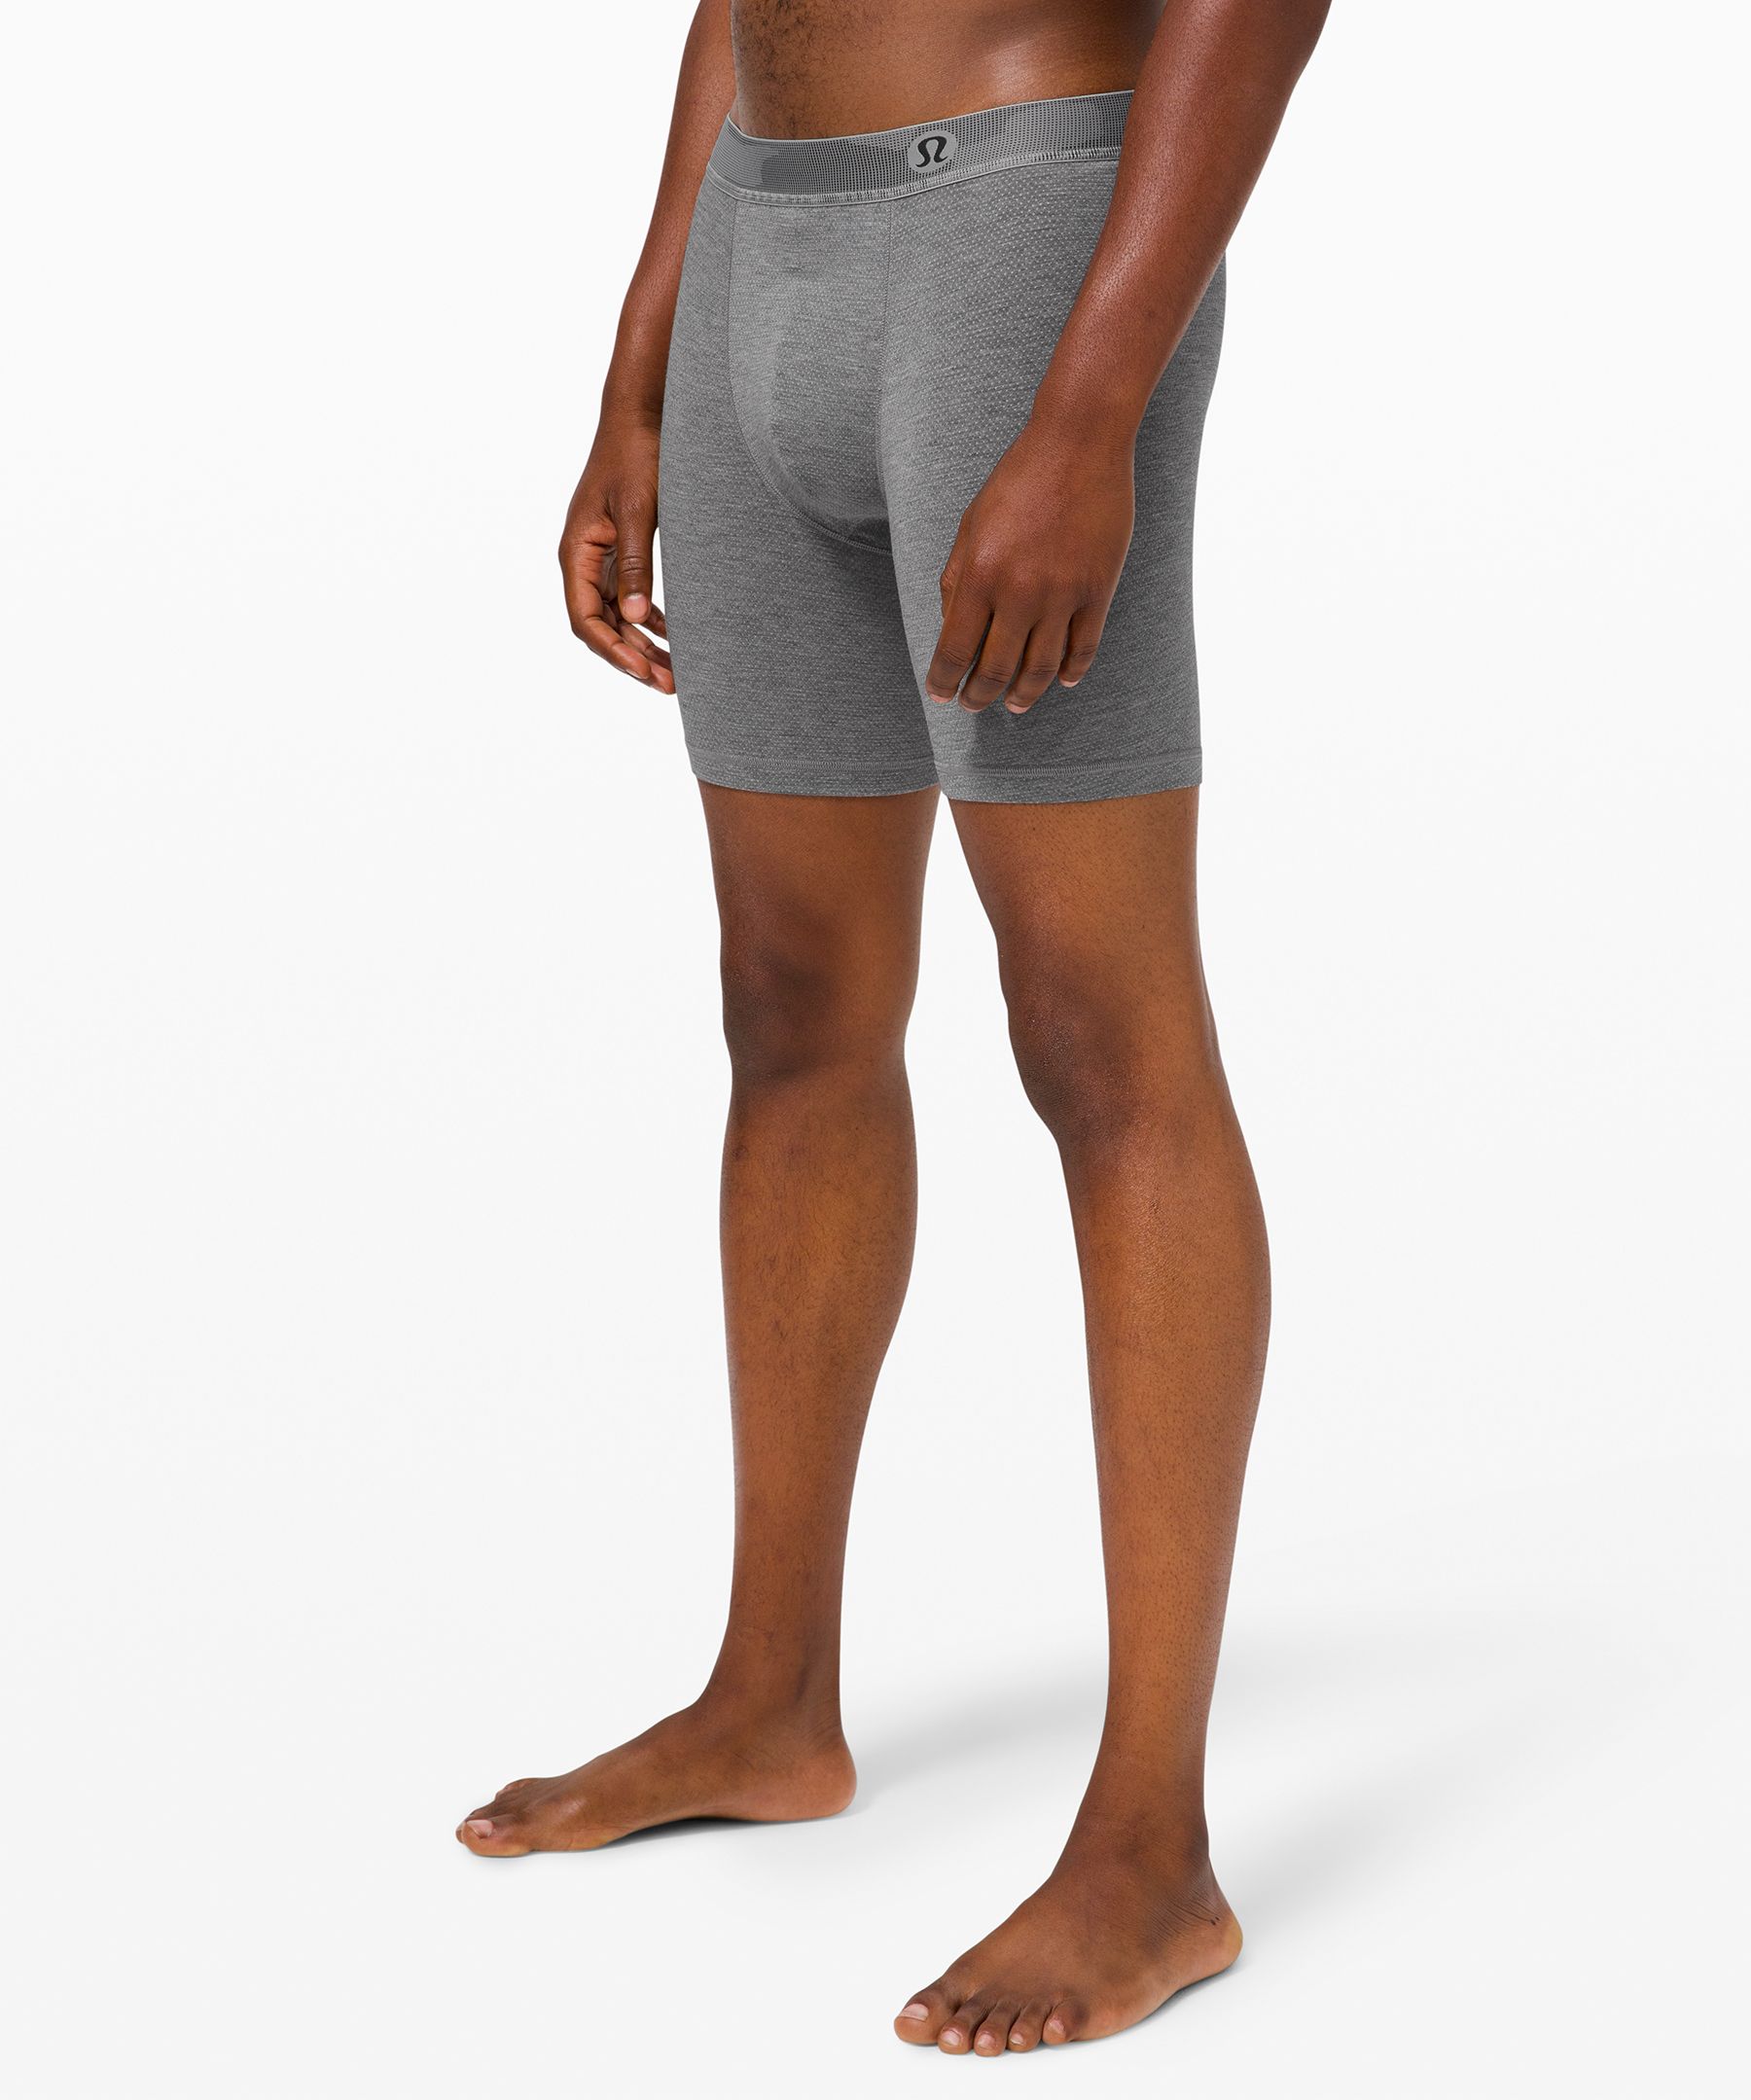 lululemon boxer shorts